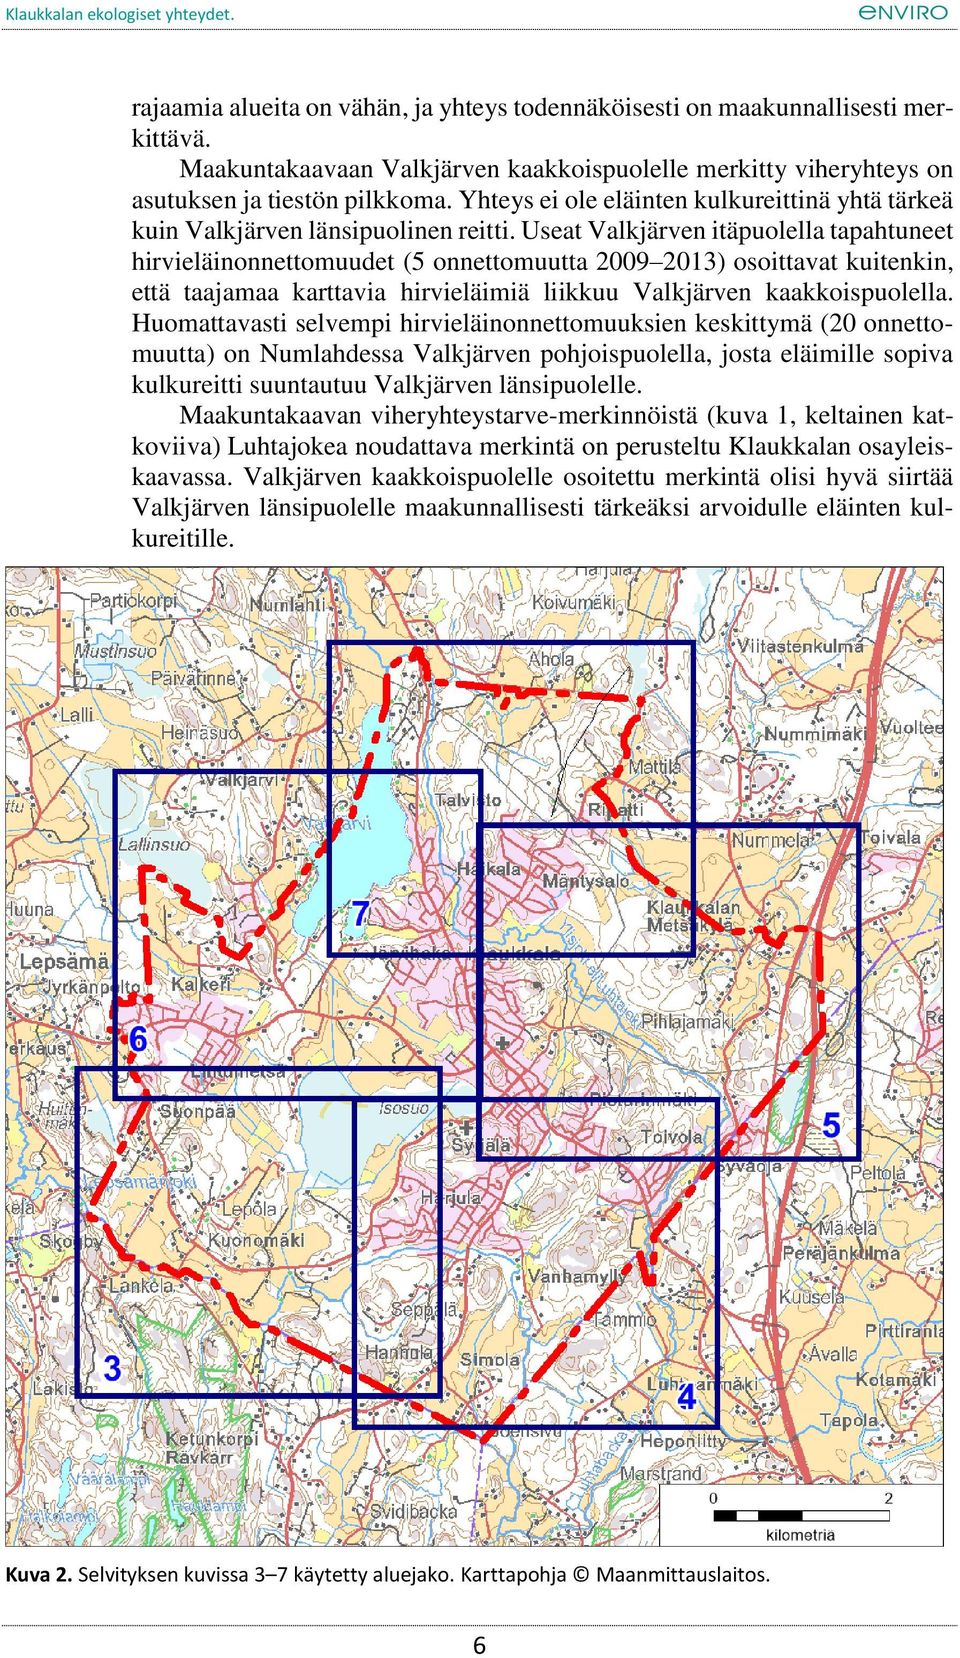 Useat Valkjärven itäpuolella tapahtuneet hirvieläinonnettomuudet (5 onnettomuutta 2009 2013) osoittavat kuitenkin, että taajamaa karttavia hirvieläimiä liikkuu Valkjärven kaakkoispuolella.